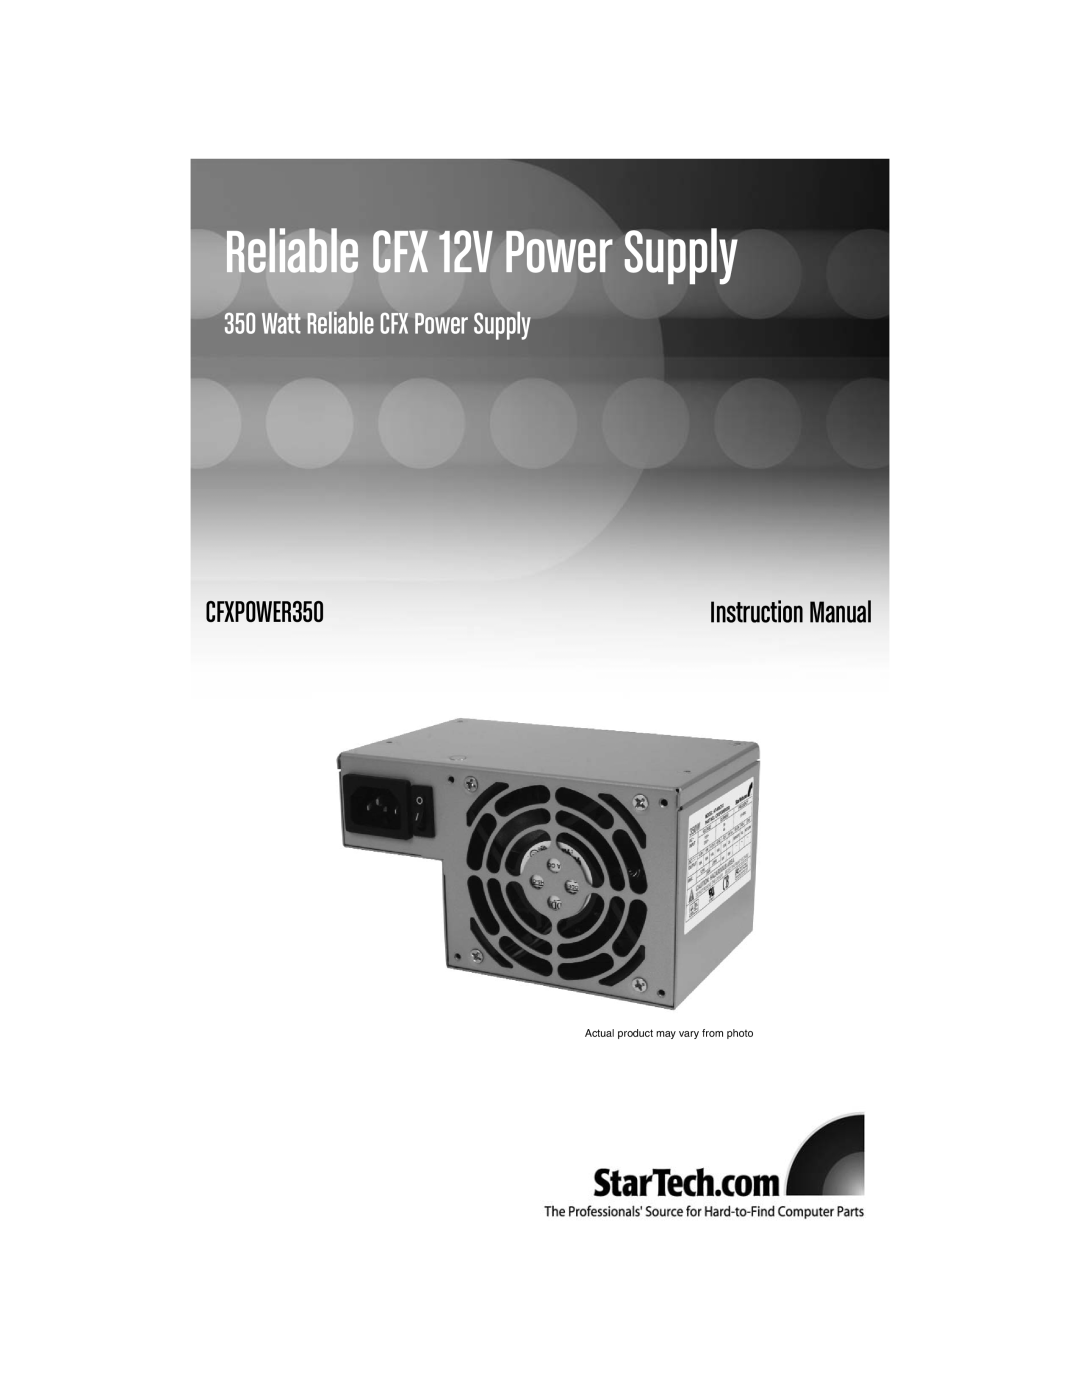 StarTech.com CFXPOWER350 instruction manual Reliable CFX 12V Power Supply, Watt Reliable CFX Power Supply 